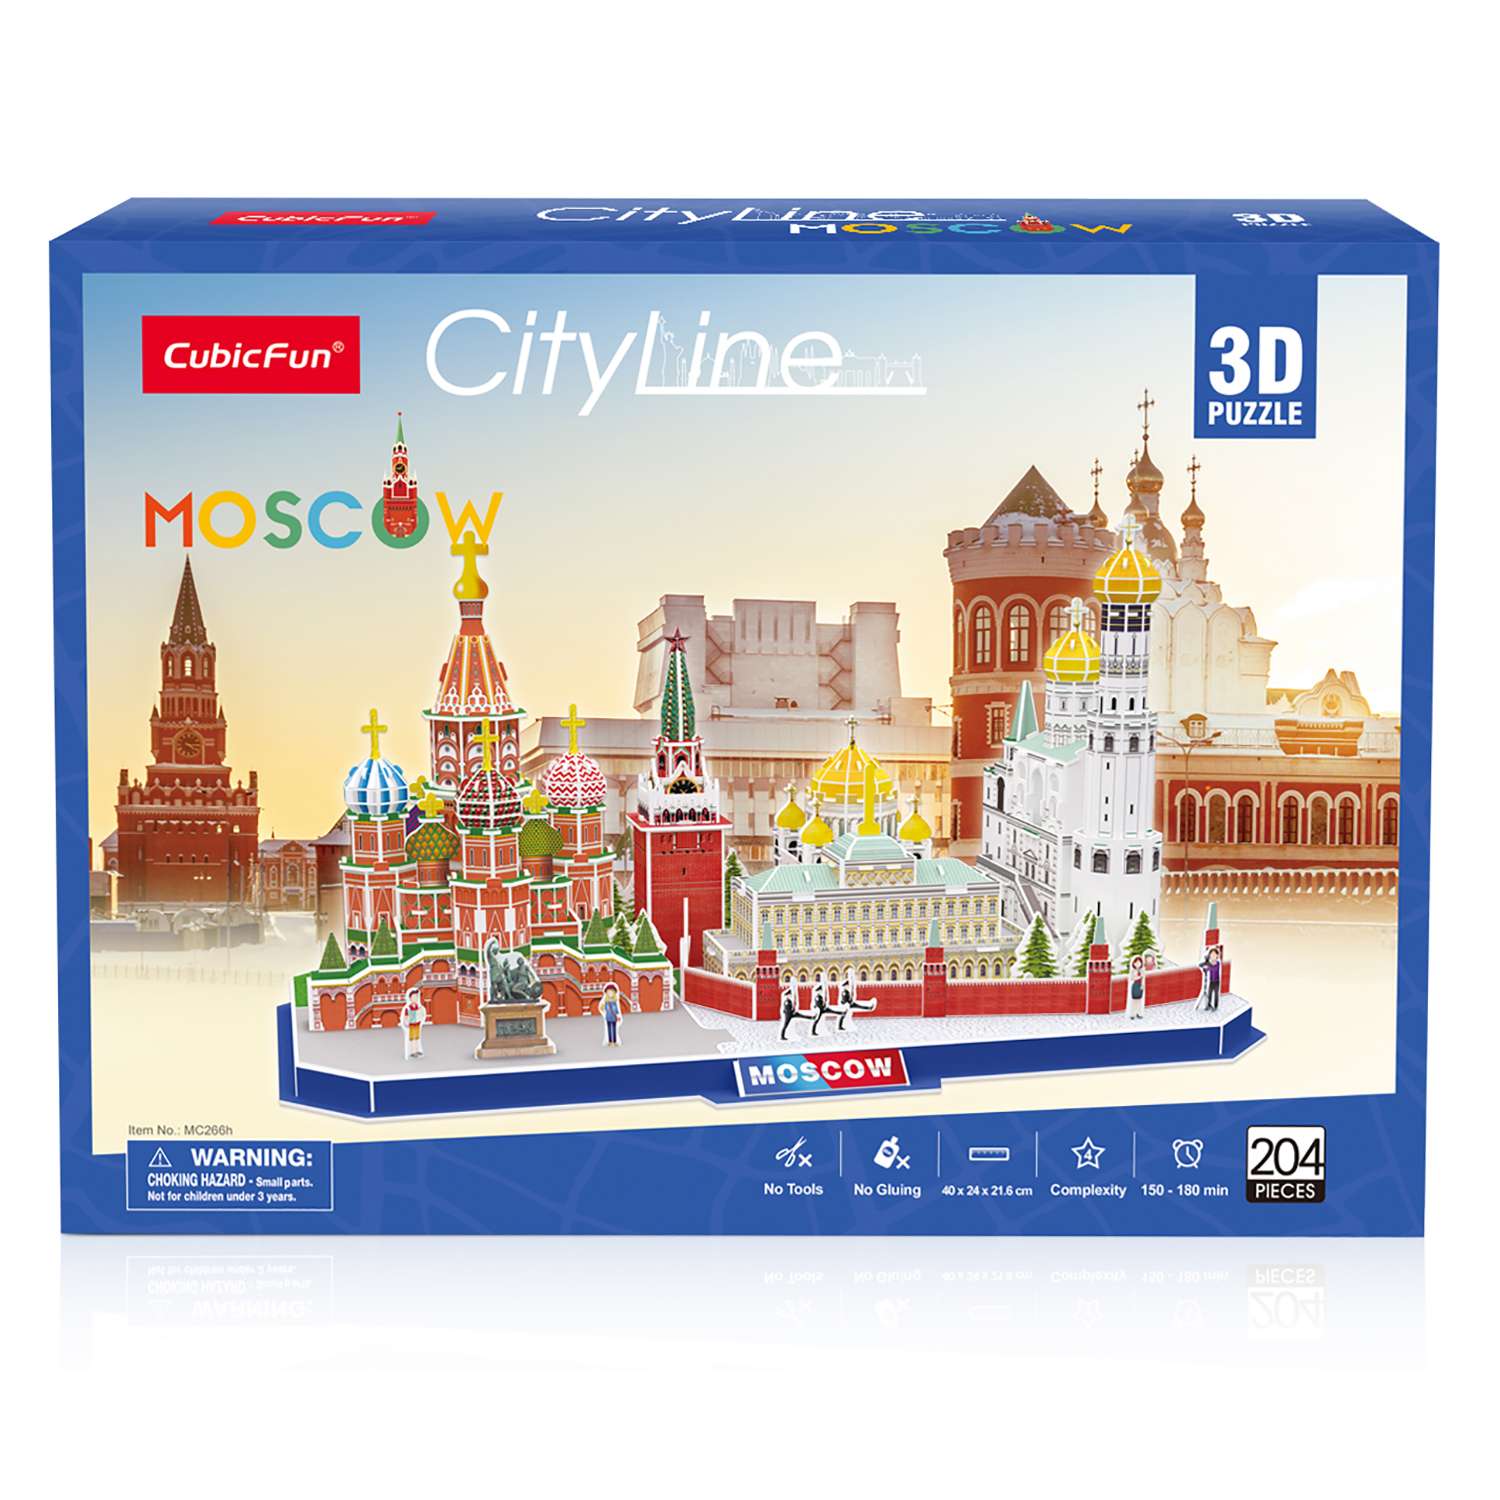 Пазл CubicFun Москва CityLine 3D 204детали MC266h - фото 1